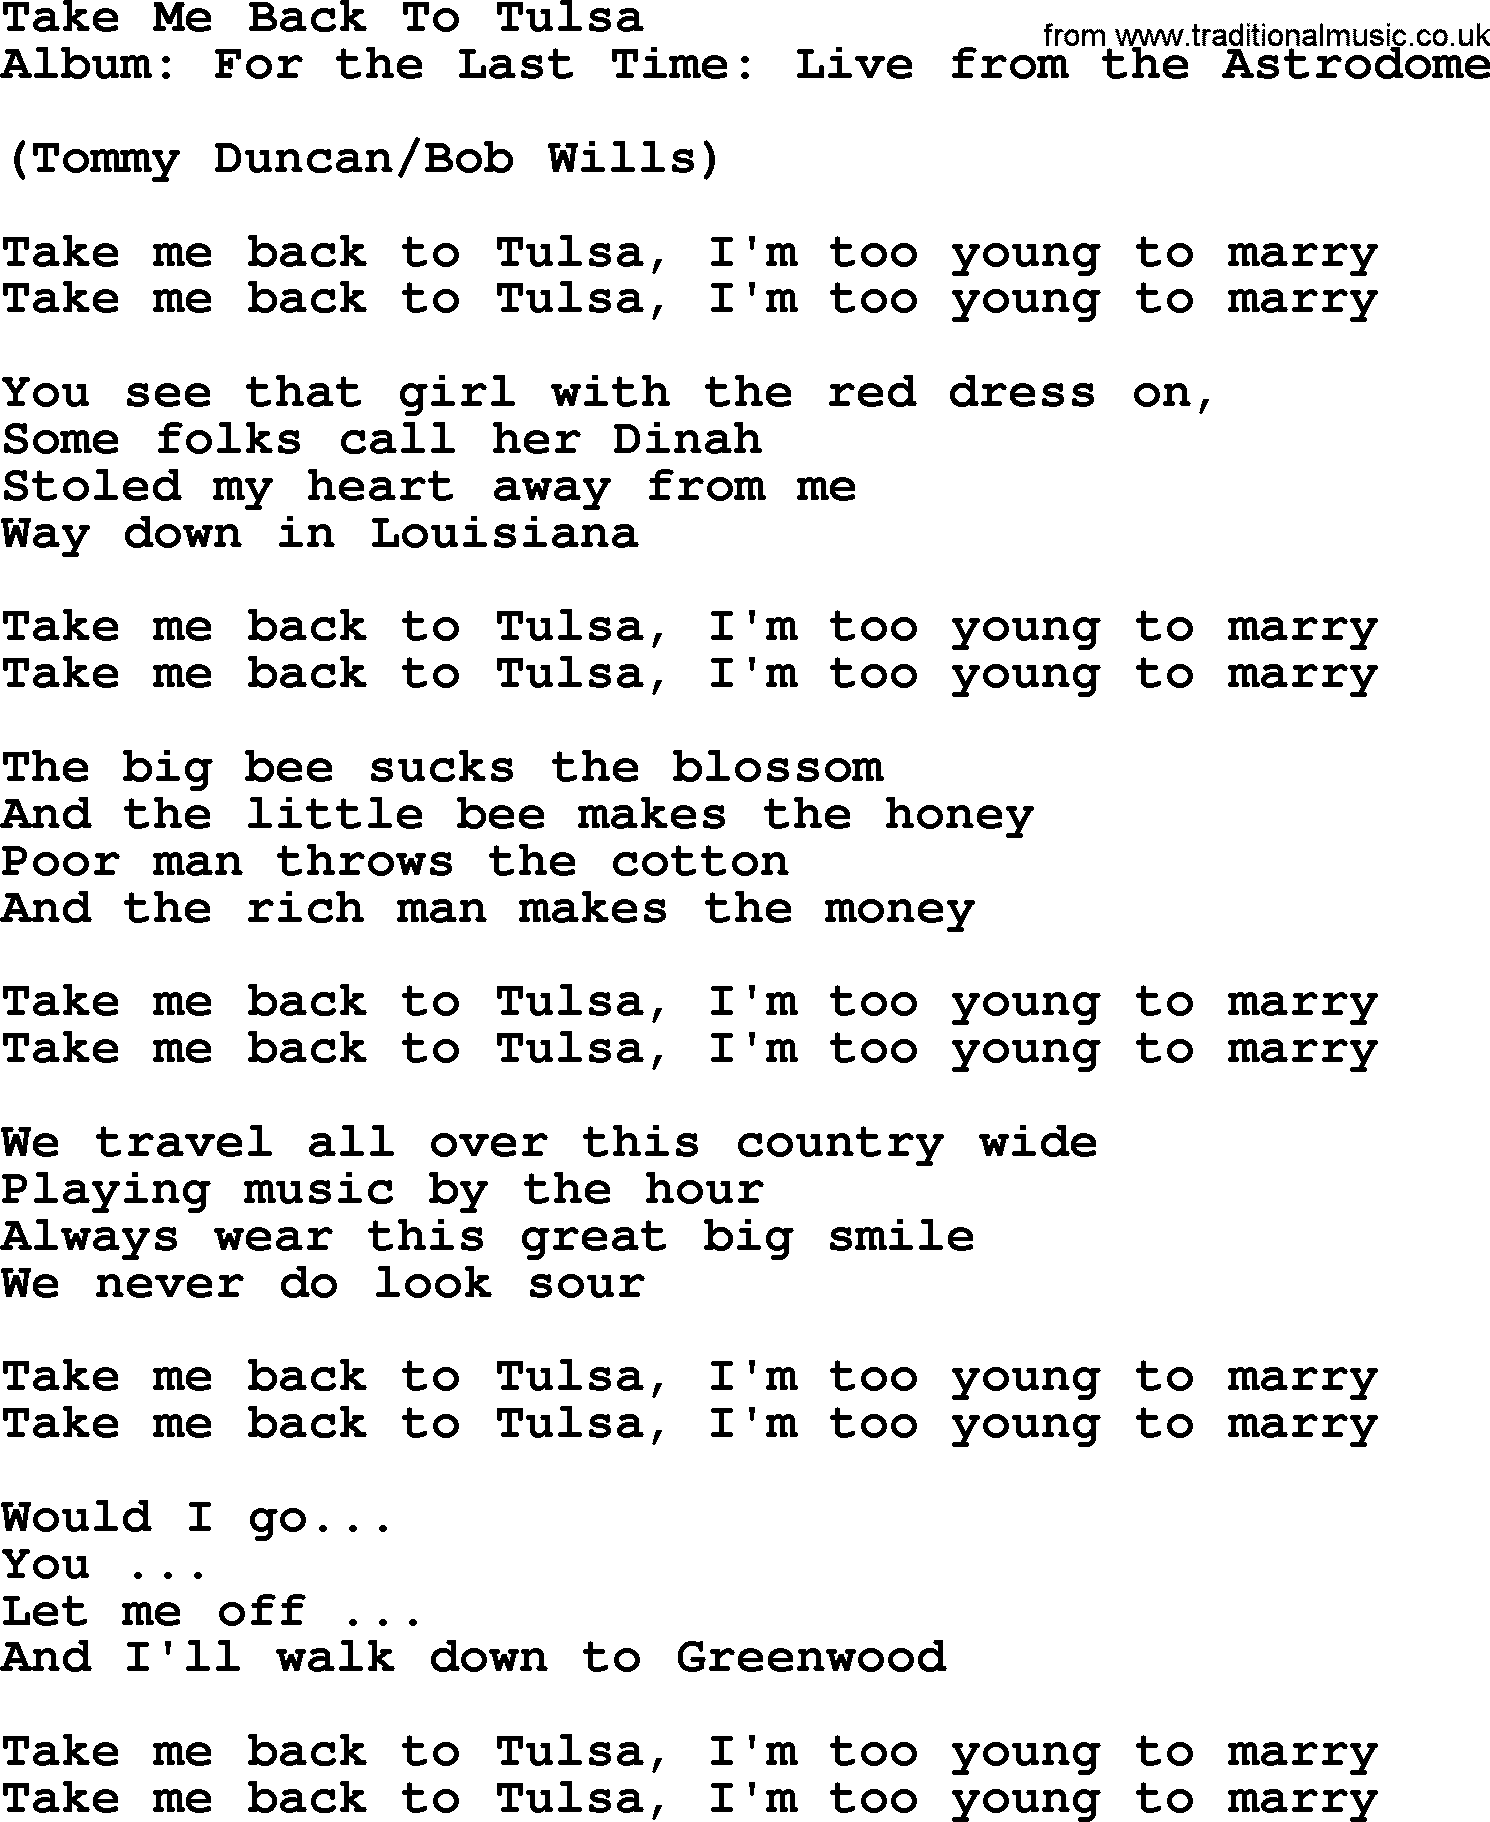 George Strait song: Take Me Back To Tulsa, lyrics